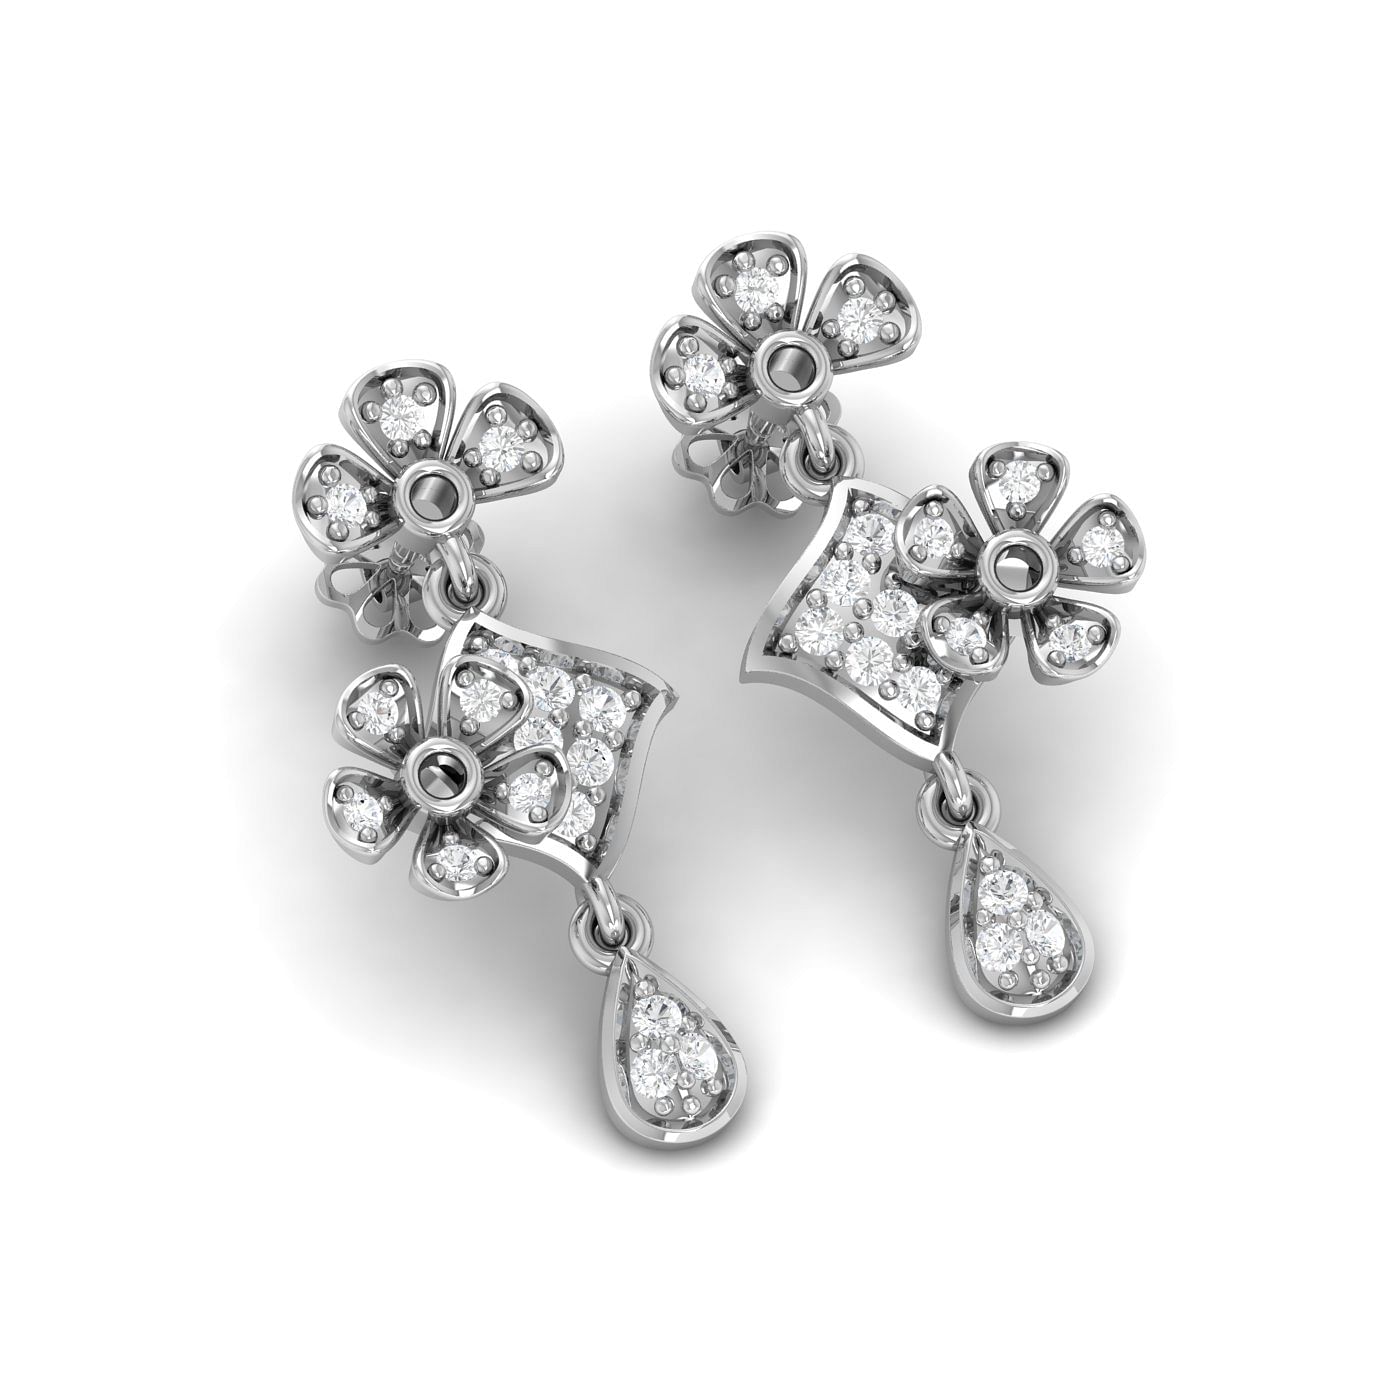 Flower style drop diamond earring set in white gold